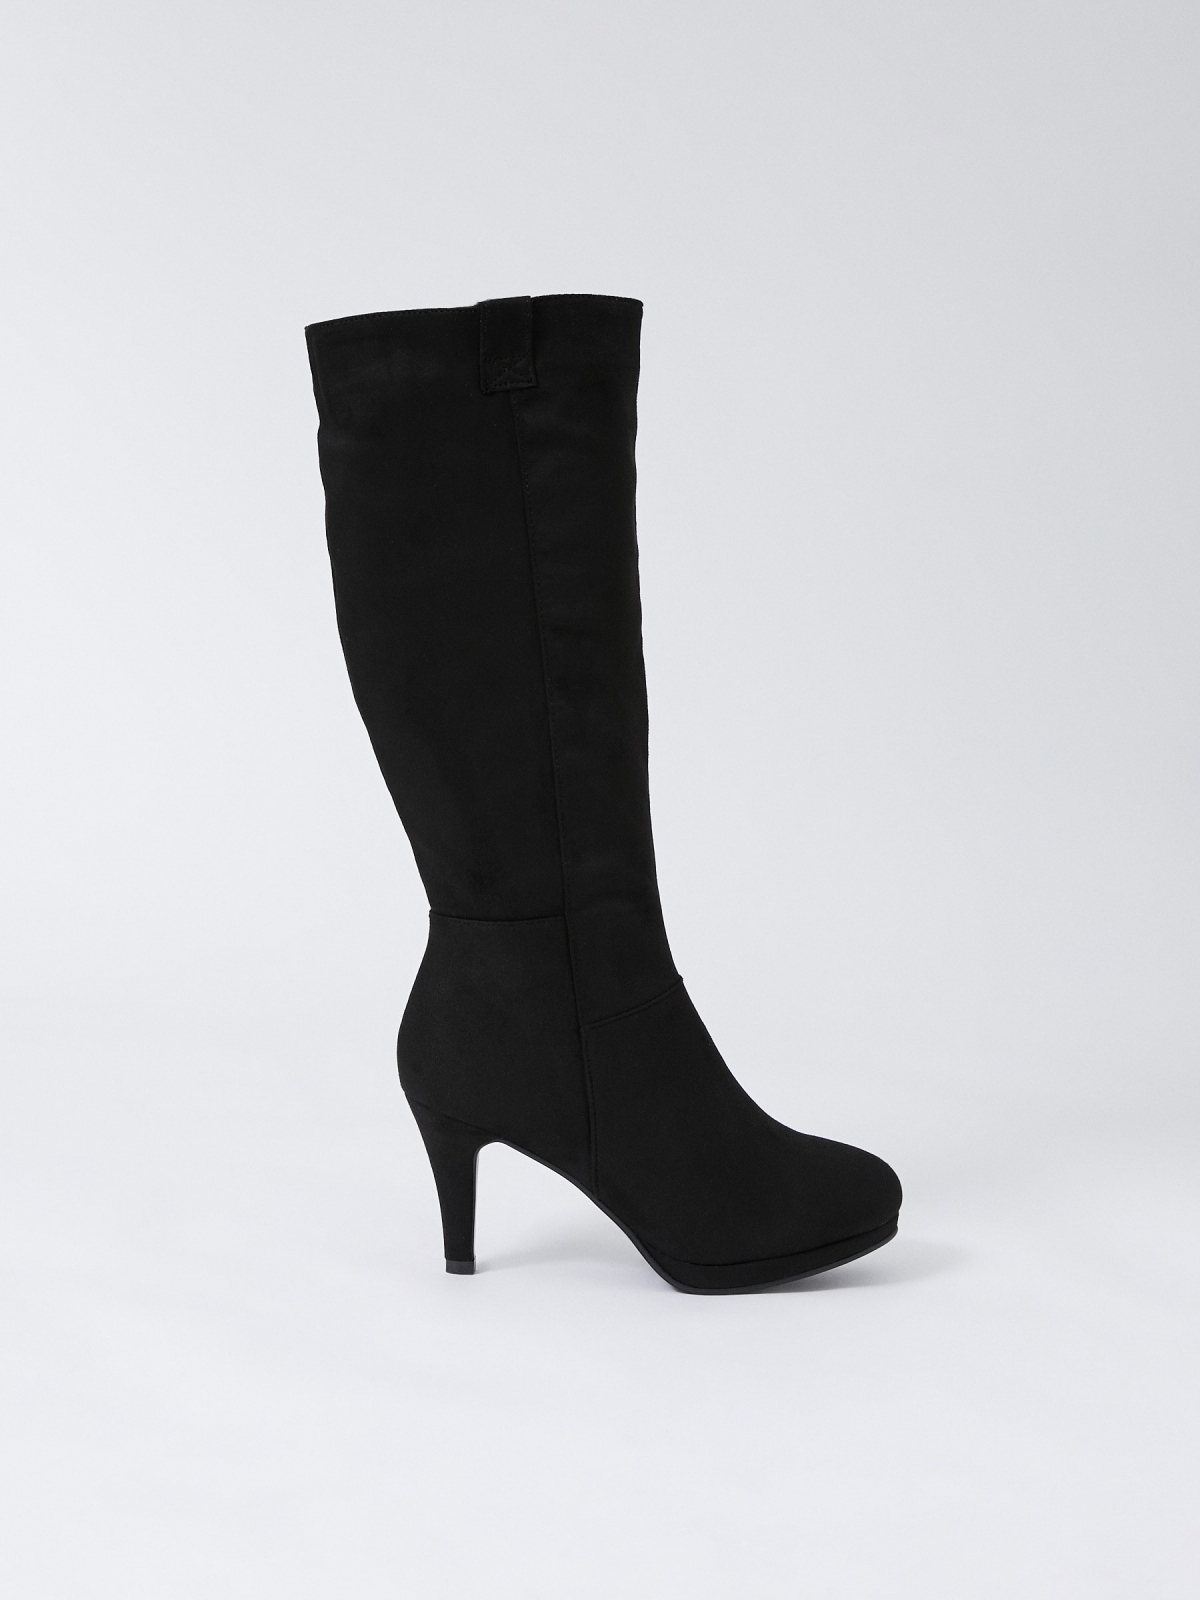 New Suede heel boot black